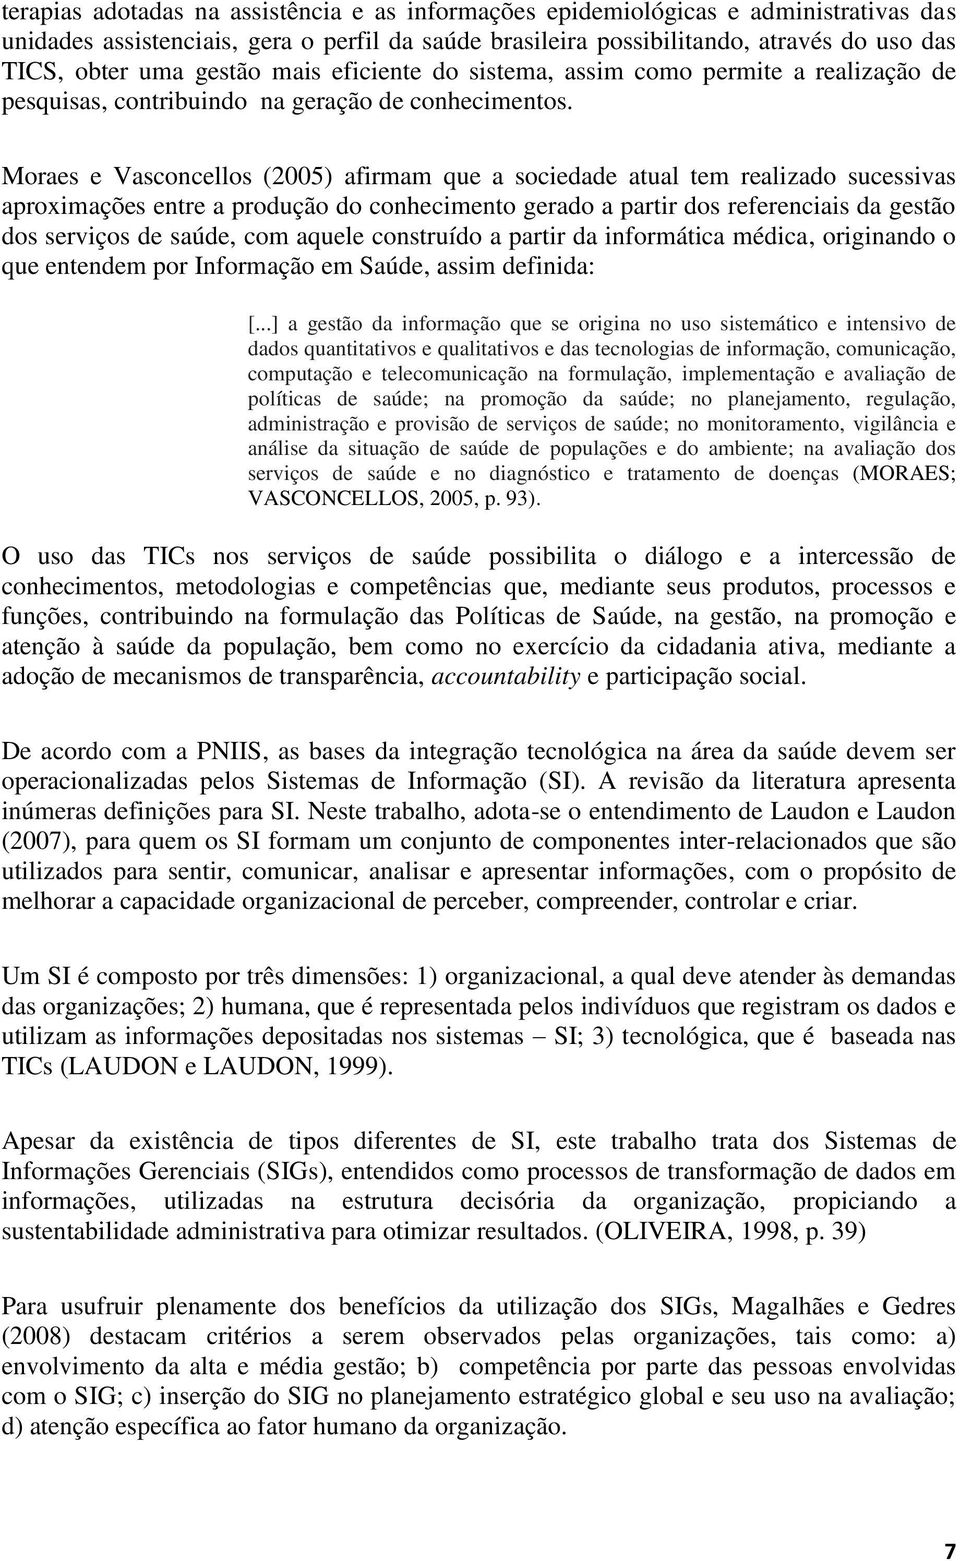 Moraes e Vasconcellos (2005) afirmam que a sociedade atual tem realizado sucessivas aproximações entre a produção do conhecimento gerado a partir dos referenciais da gestão dos serviços de saúde, com